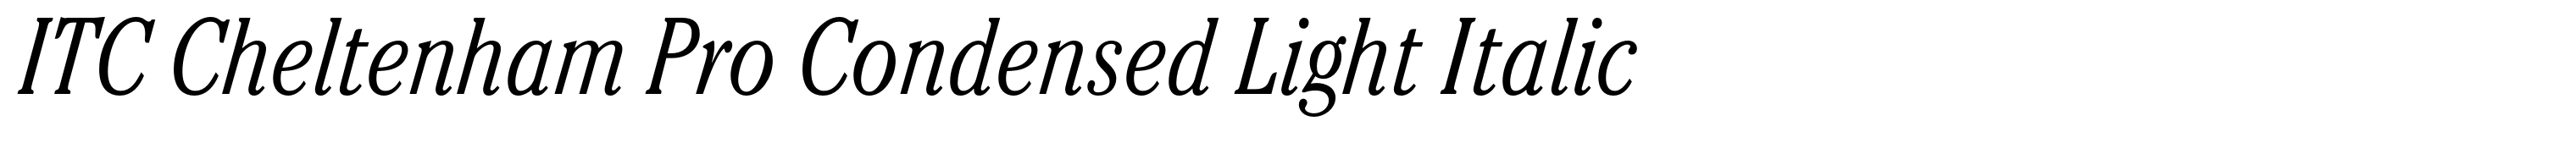 ITC Cheltenham Pro Condensed Light Italic